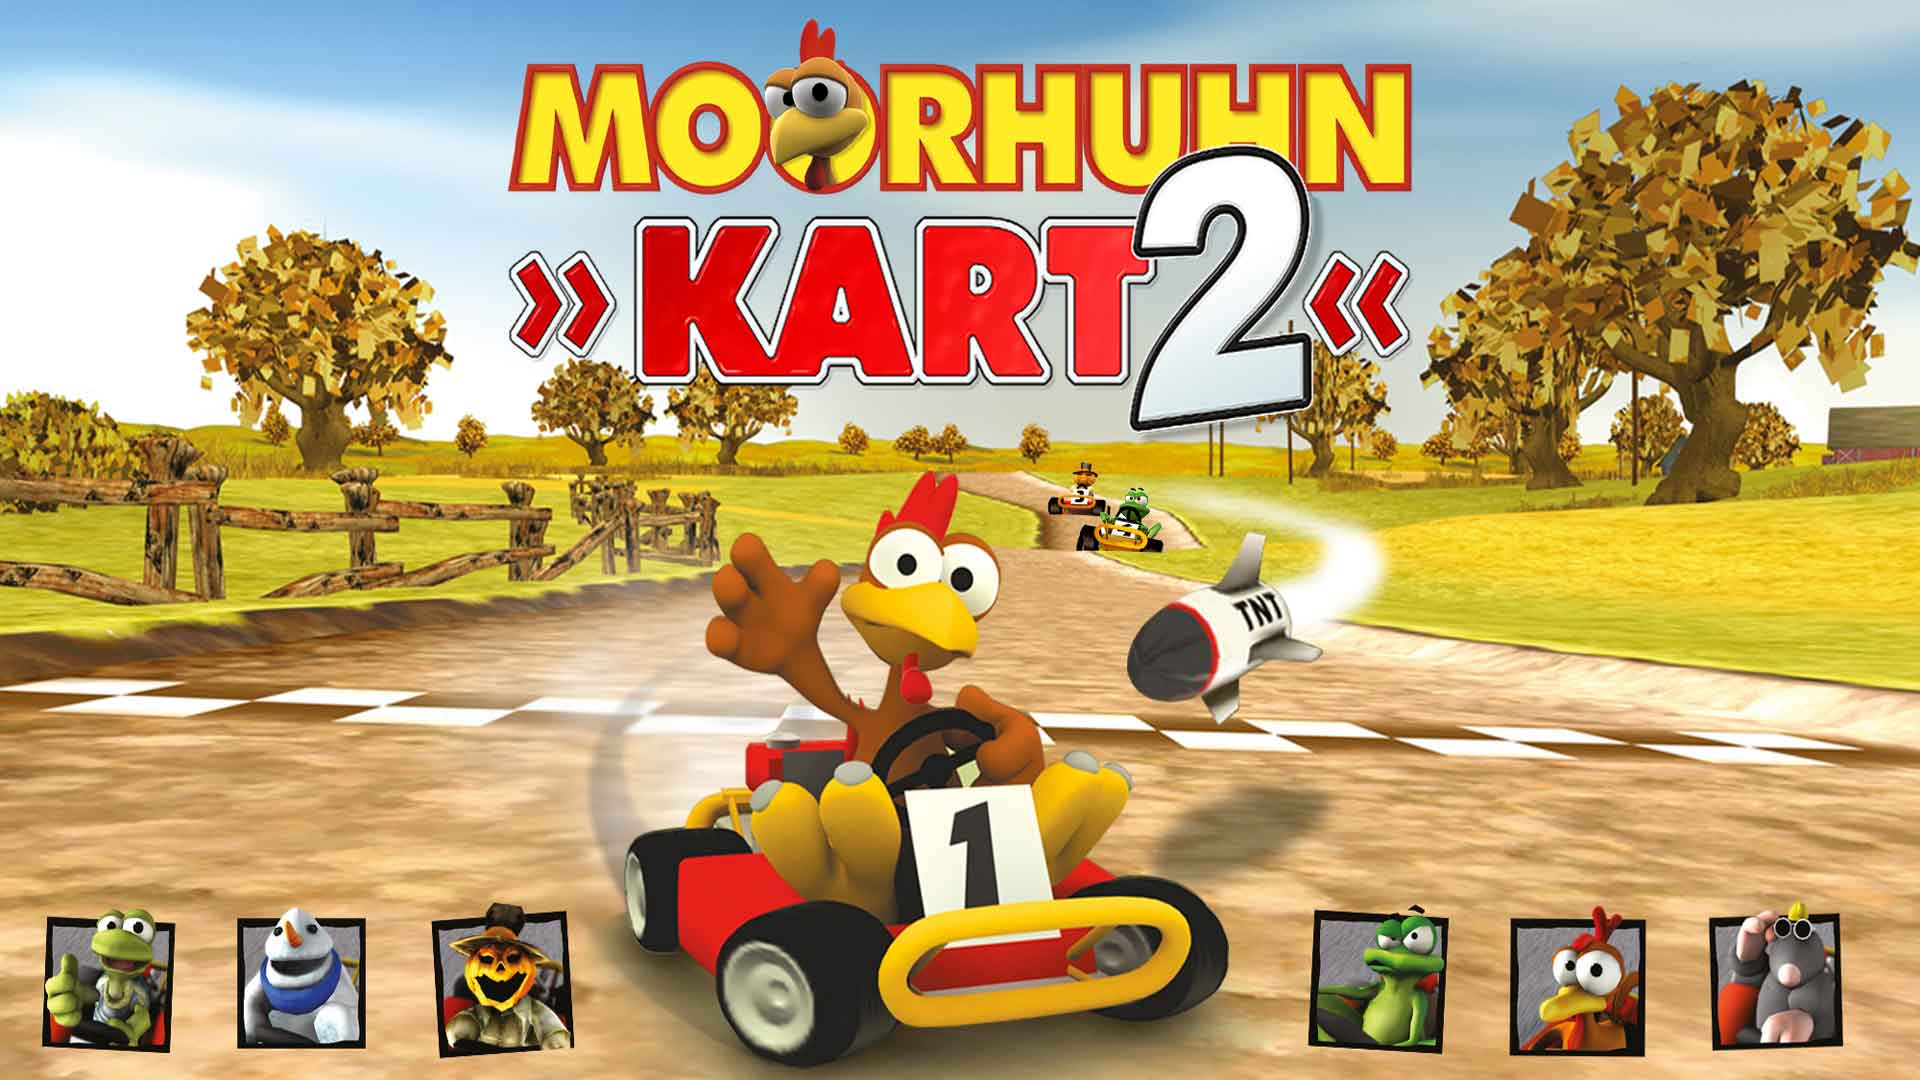 Moorhuhn Kart 2 - release date, videos, screenshots, reviews on RAWG